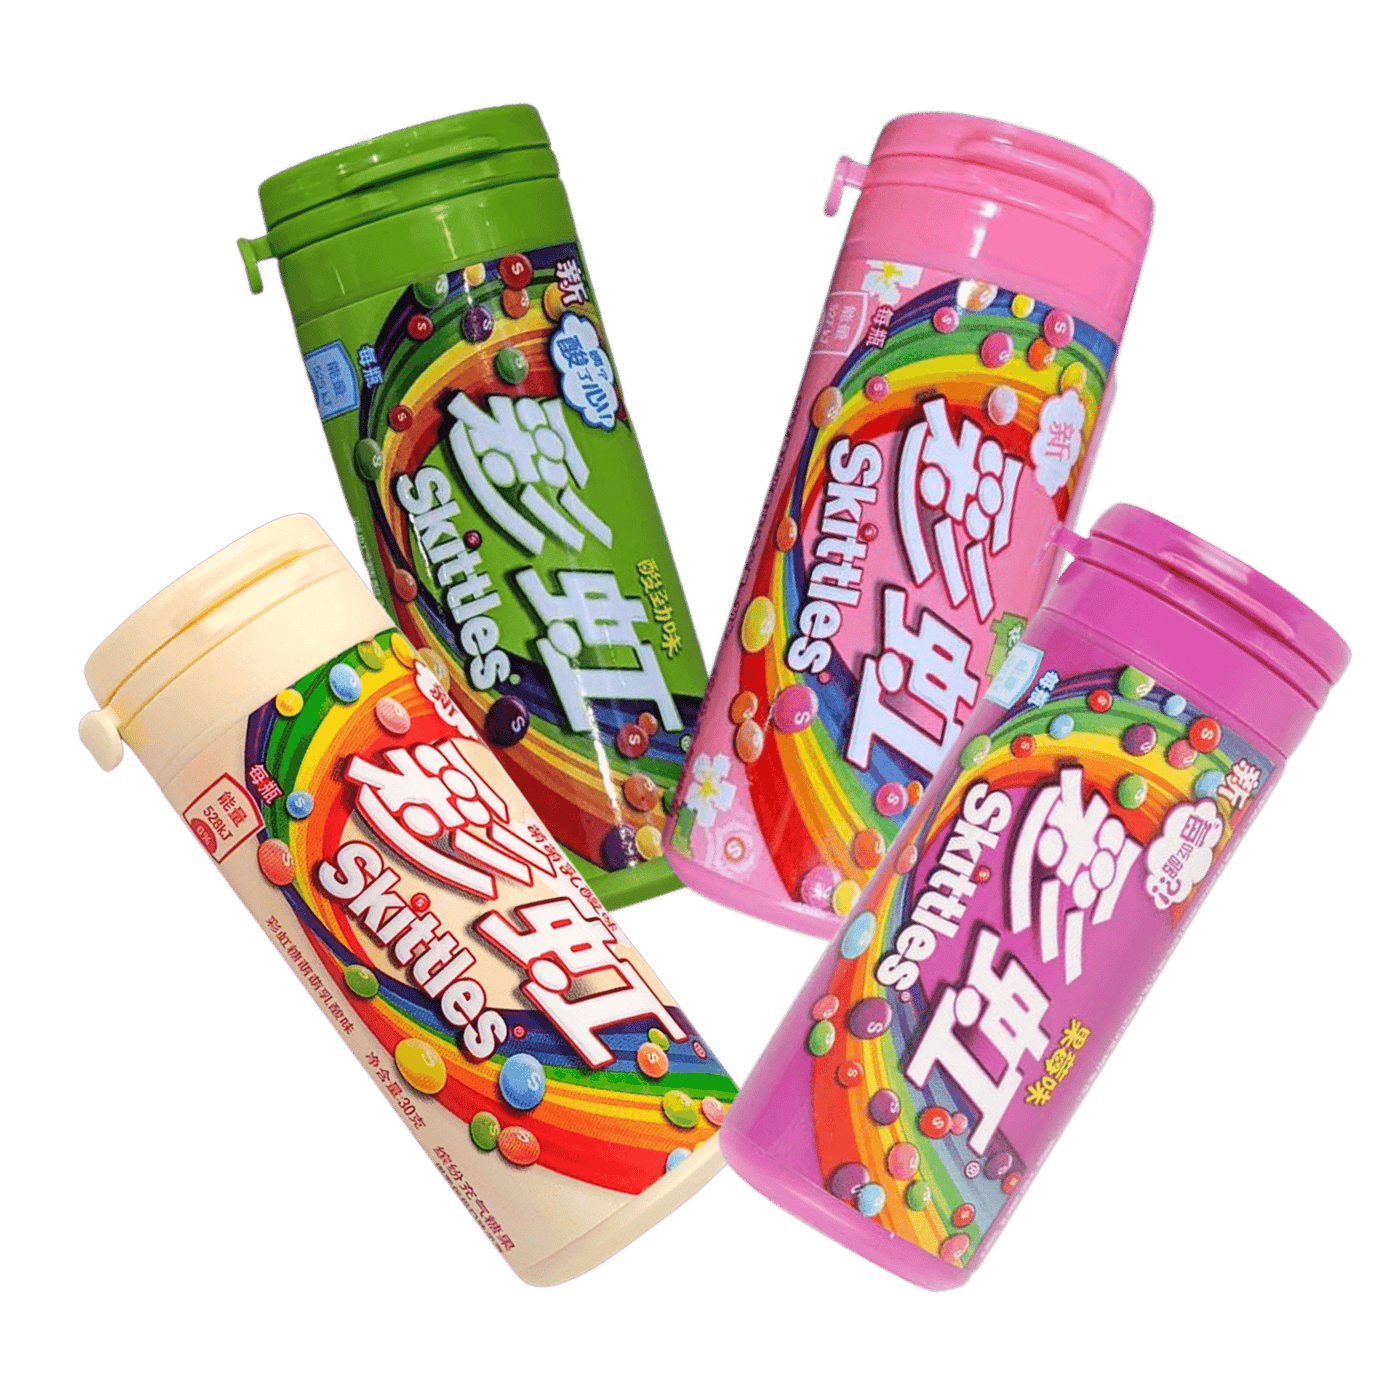 Skittles - Tube - Asie